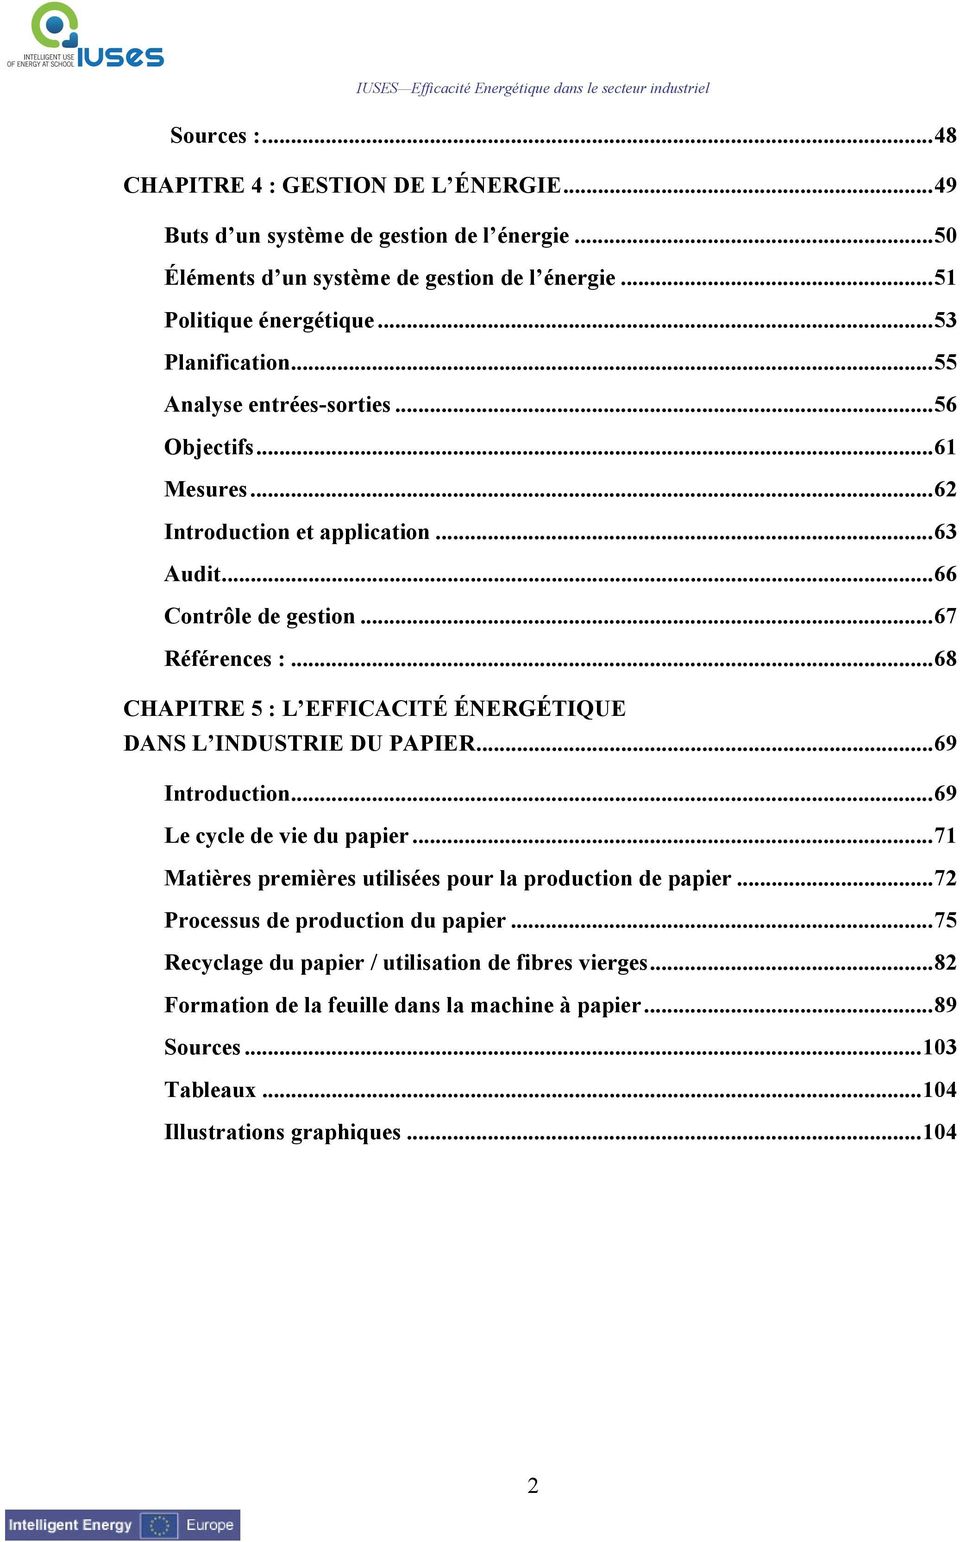 ..68 CHAPITRE 5 : L EFFICACITÉ ÉNERGÉTIQUE DANS L INDUSTRIE DU PAPIER...69 Introduction...69 Le cycle de vie du papier...71 Matières premières utilisées pour la production de papier.